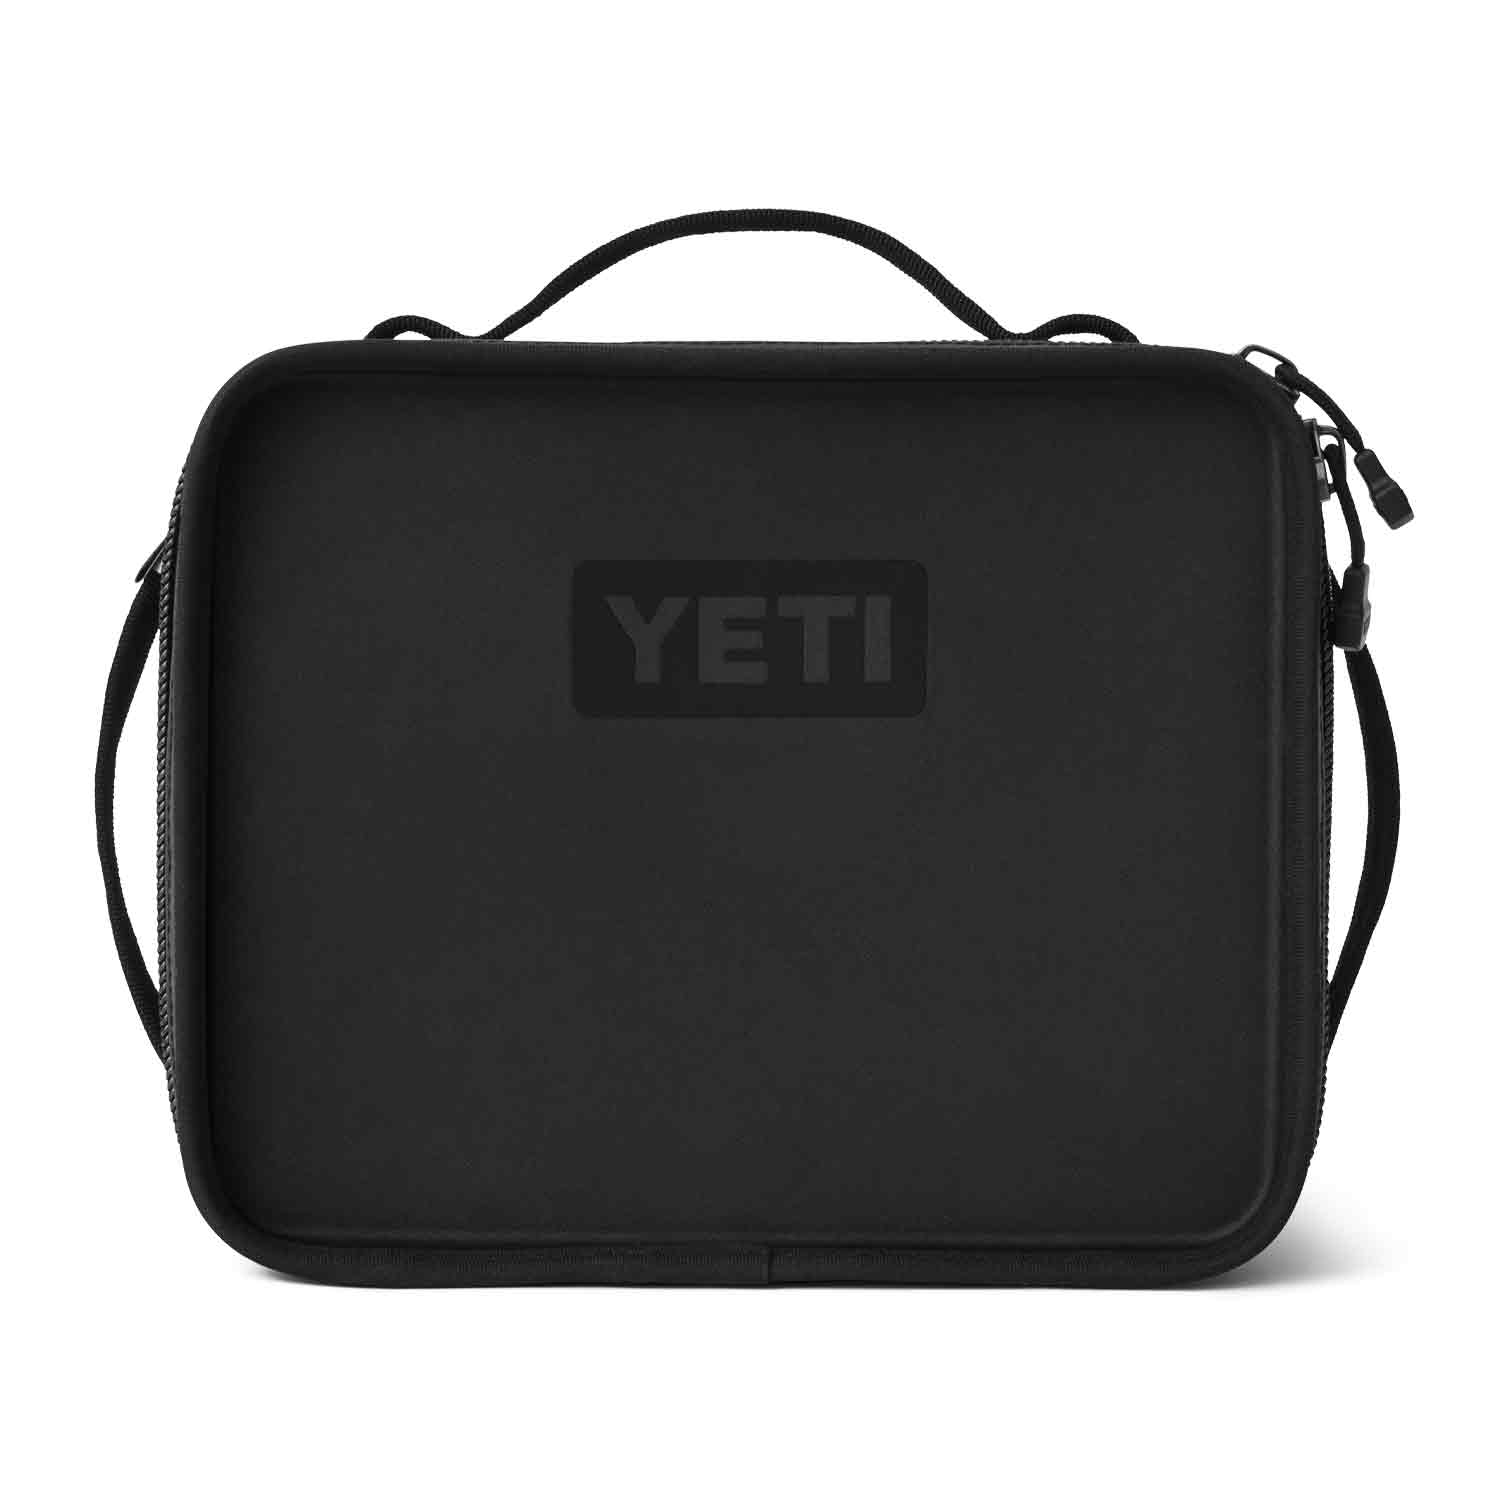 YETI Daytrip Lunch Box (Limited Edition Black)